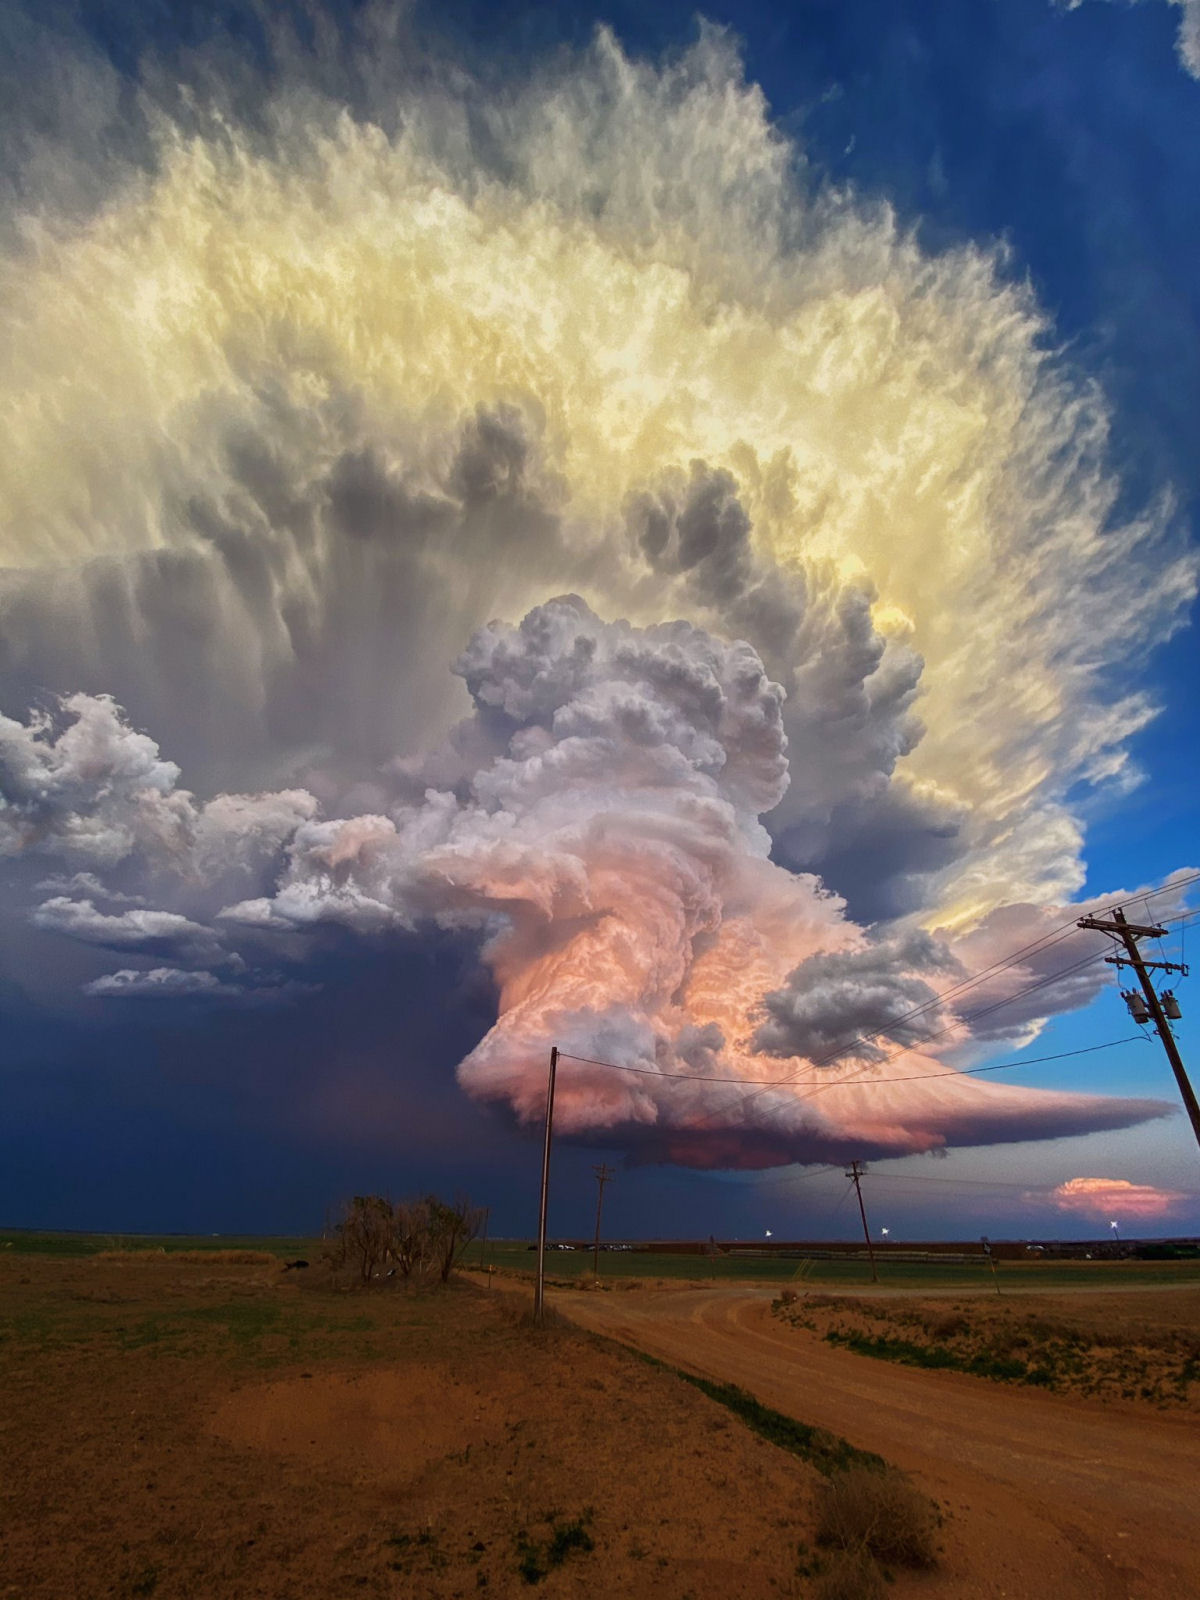 Nuvem cor de algodão-doce paira sobre uma paisagem em meio a uma tempestade